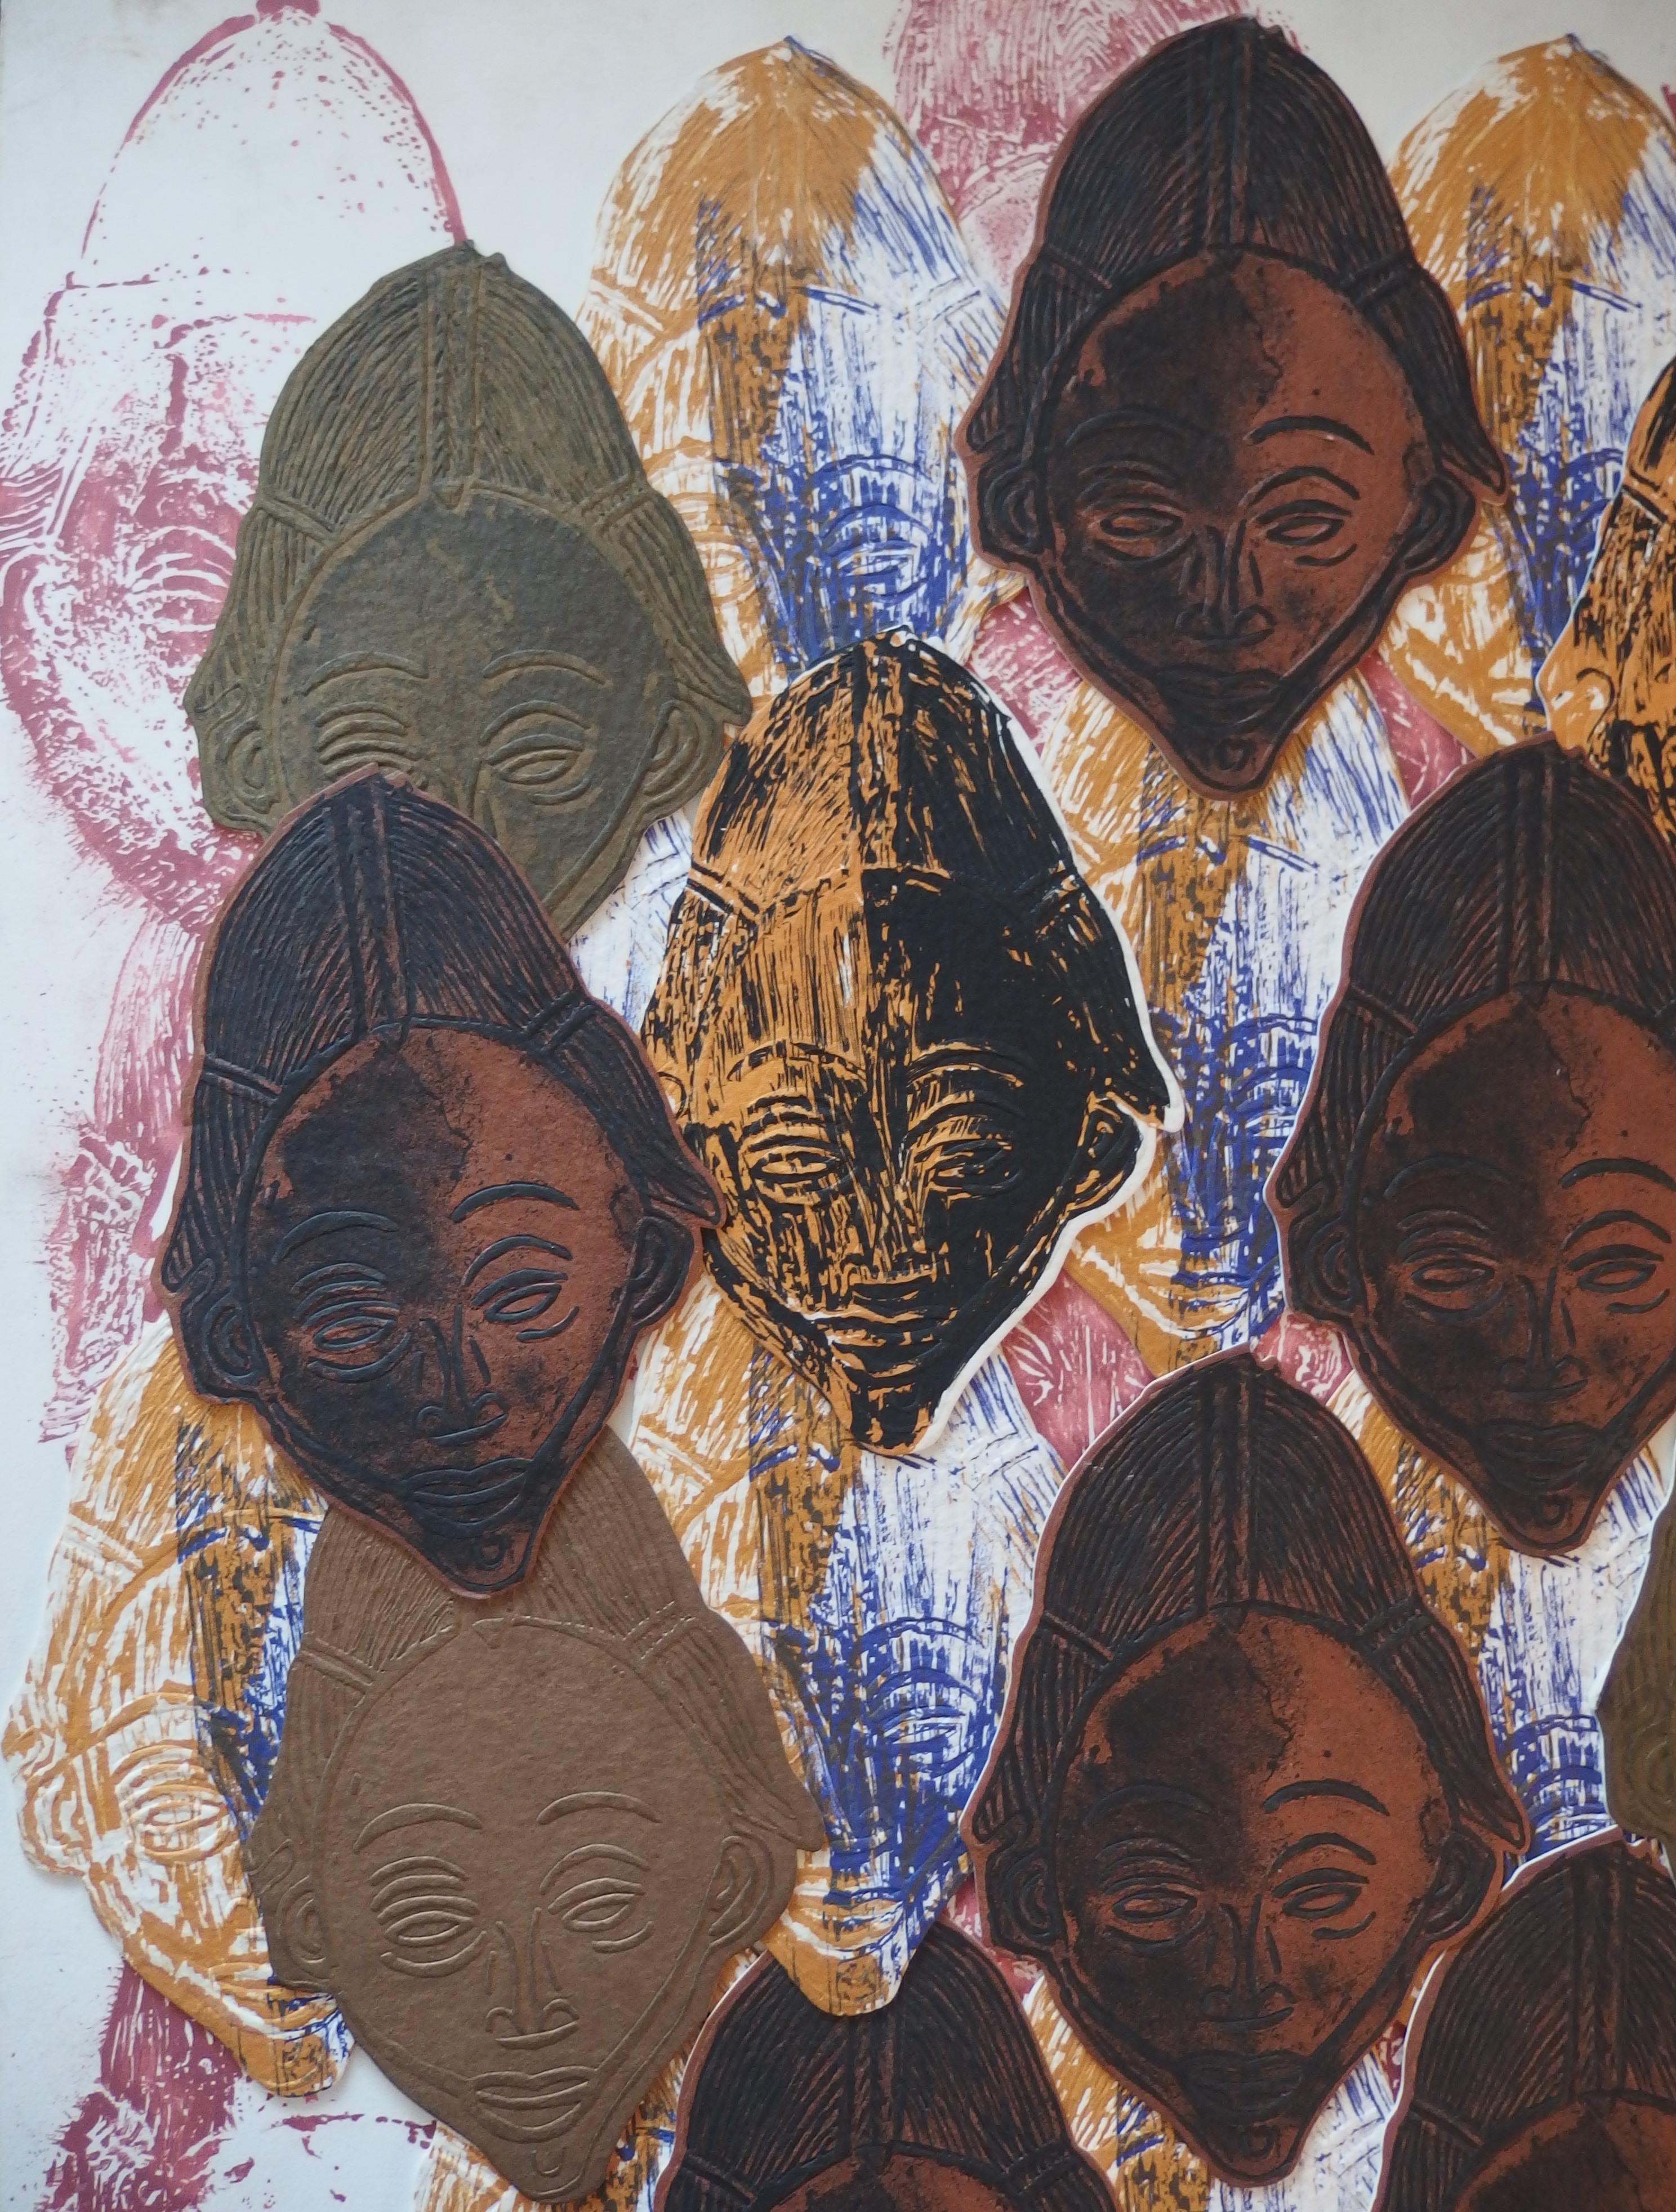 Arman (Arman Fernandez, genannt)
Anhäufung afrikanischer Masken

Originalbeklebung / Collage aus lithografischen Elementen
Handsigniert mit Bleistift
Auf Karton 78 x 61 cm (ca. 31 x 24 Zoll)
1998 schuf Arman einen Satz von 99 verschiedenen Collagen